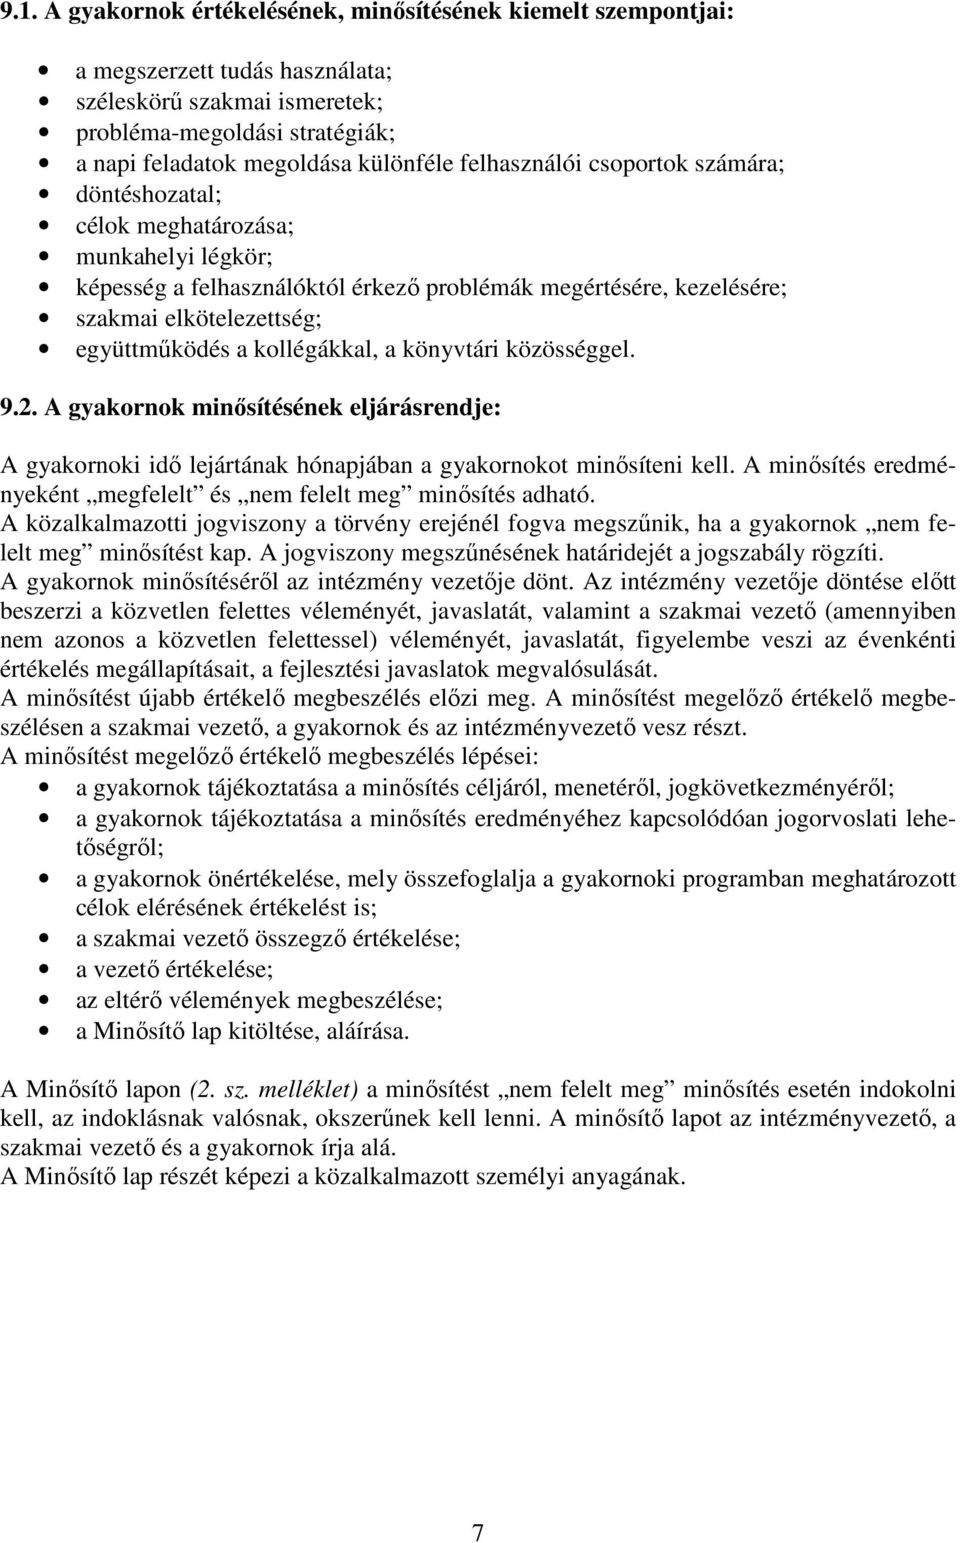 kollégákkal, a könyvtári közösséggel. 9.2. A gyakornok minısítésének eljárásrendje: A gyakornoki idı lejártának hónapjában a gyakornokot minısíteni kell.